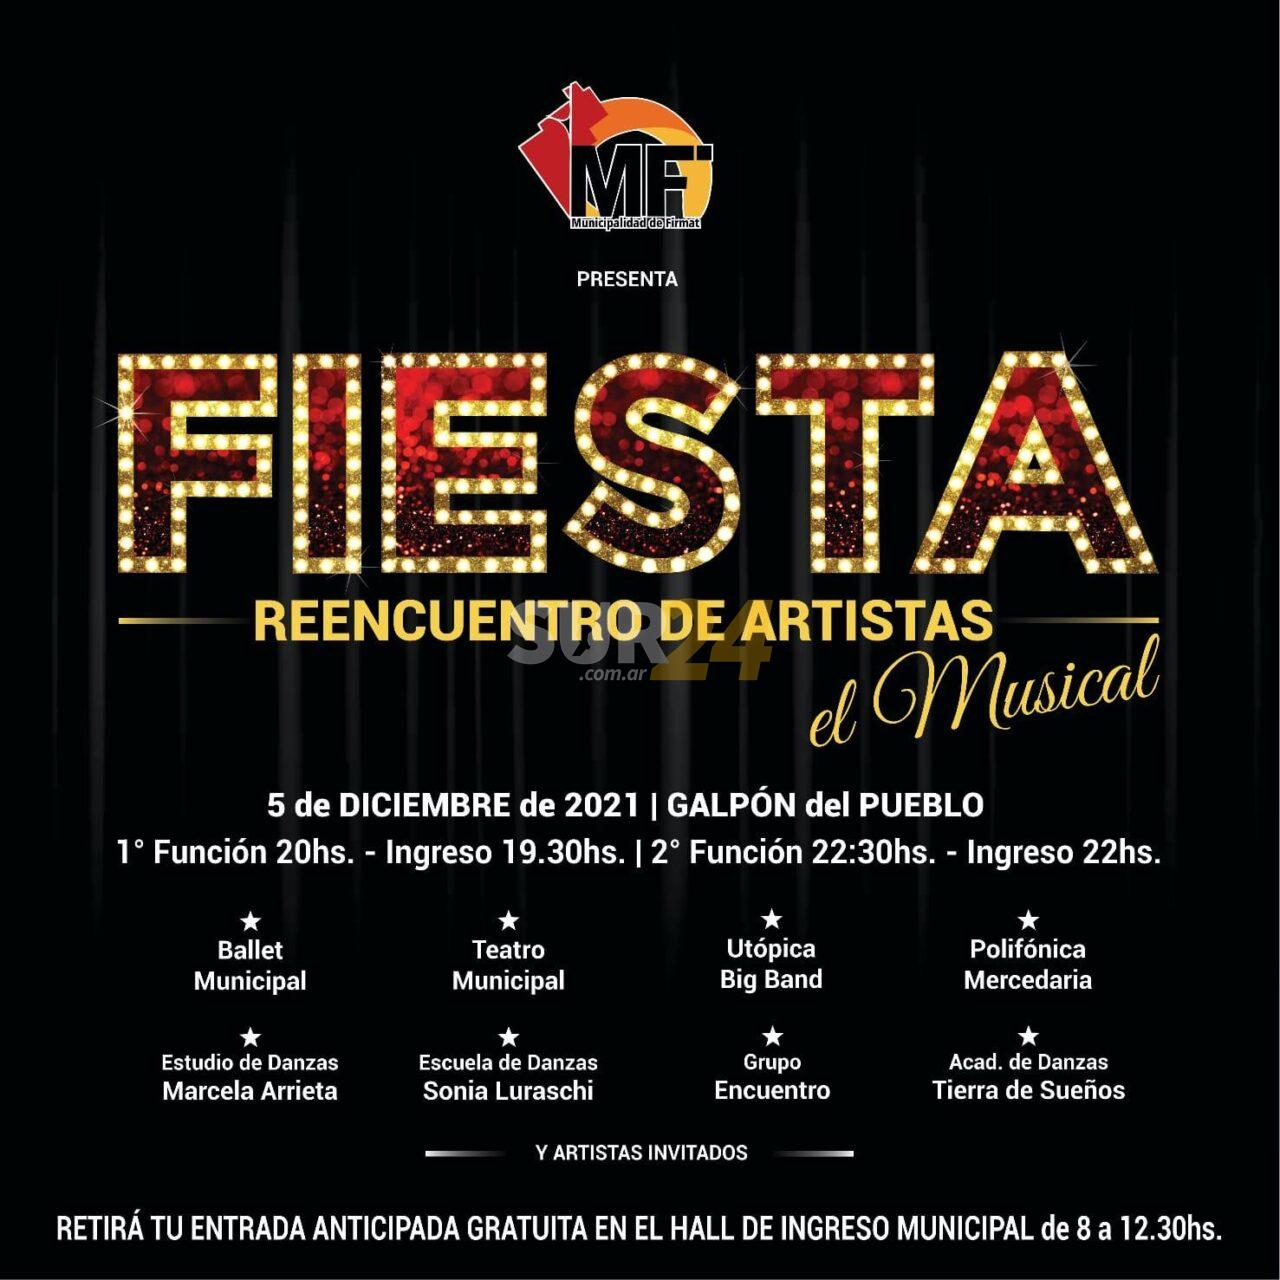 Fiesta reencuentro de artistas en Firmat: “El Musical”